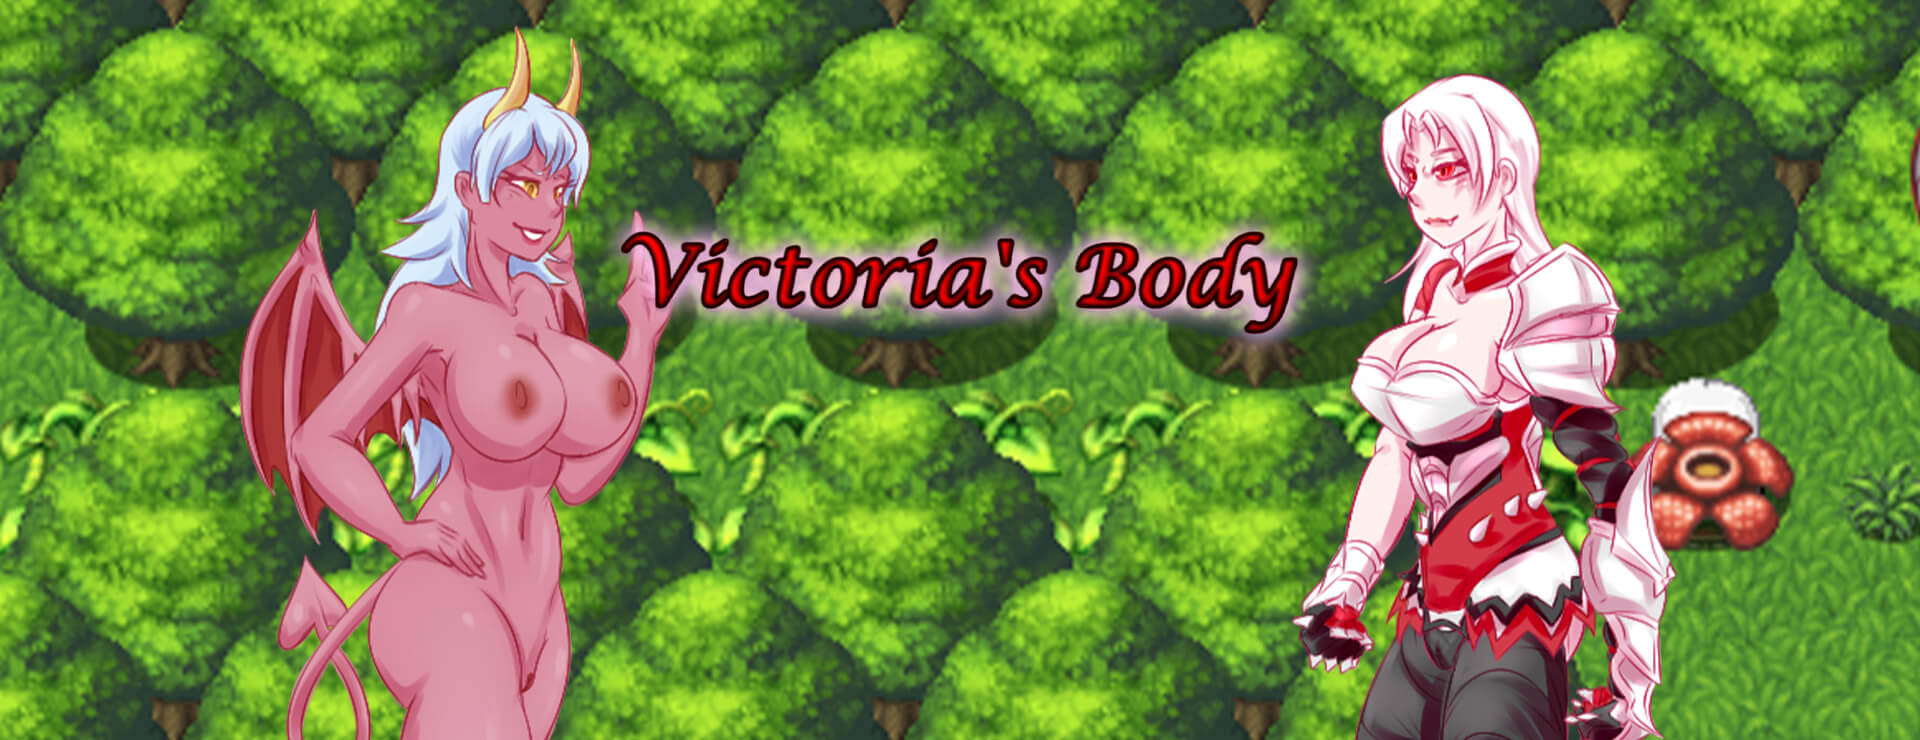 Victoria's Body - RPG Spiel